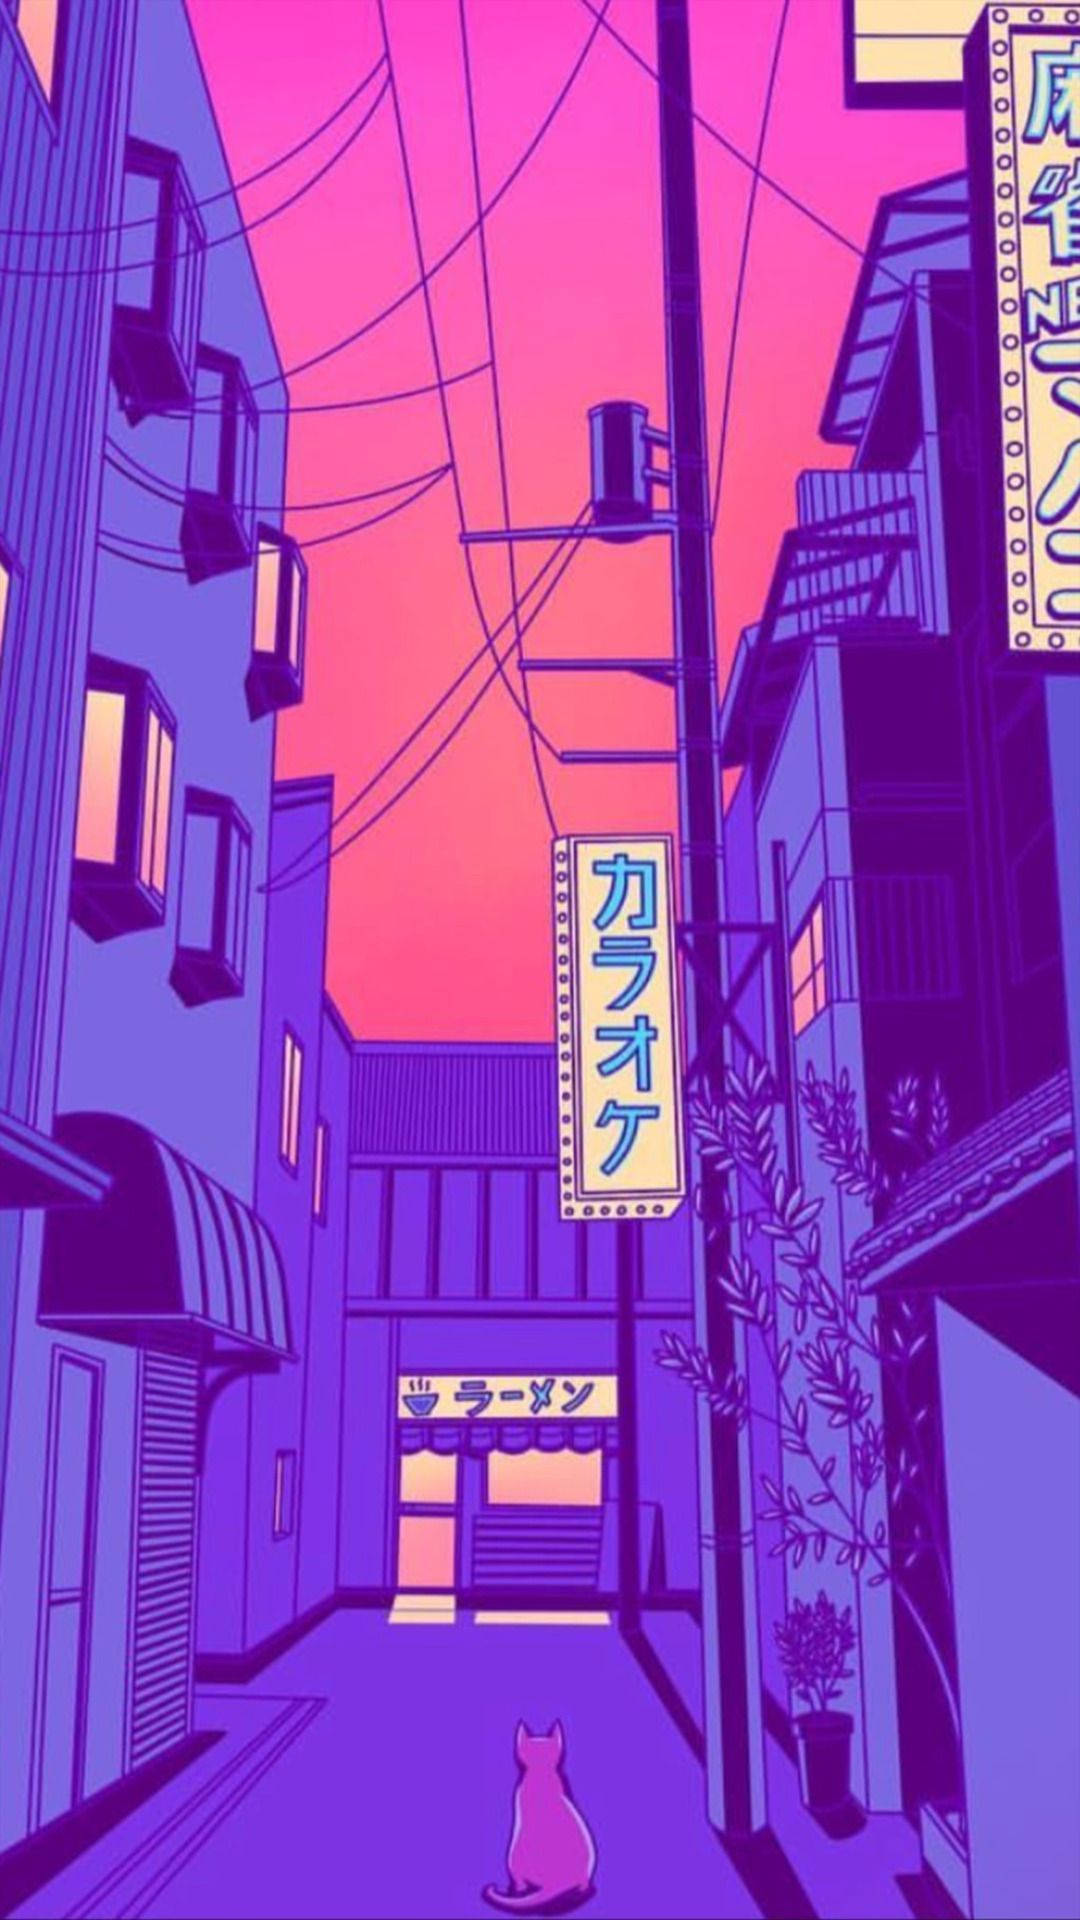 Sumérgeteen Un Mundo De Ensueño De Arte Estético De Anime Púrpura Fondo de pantalla